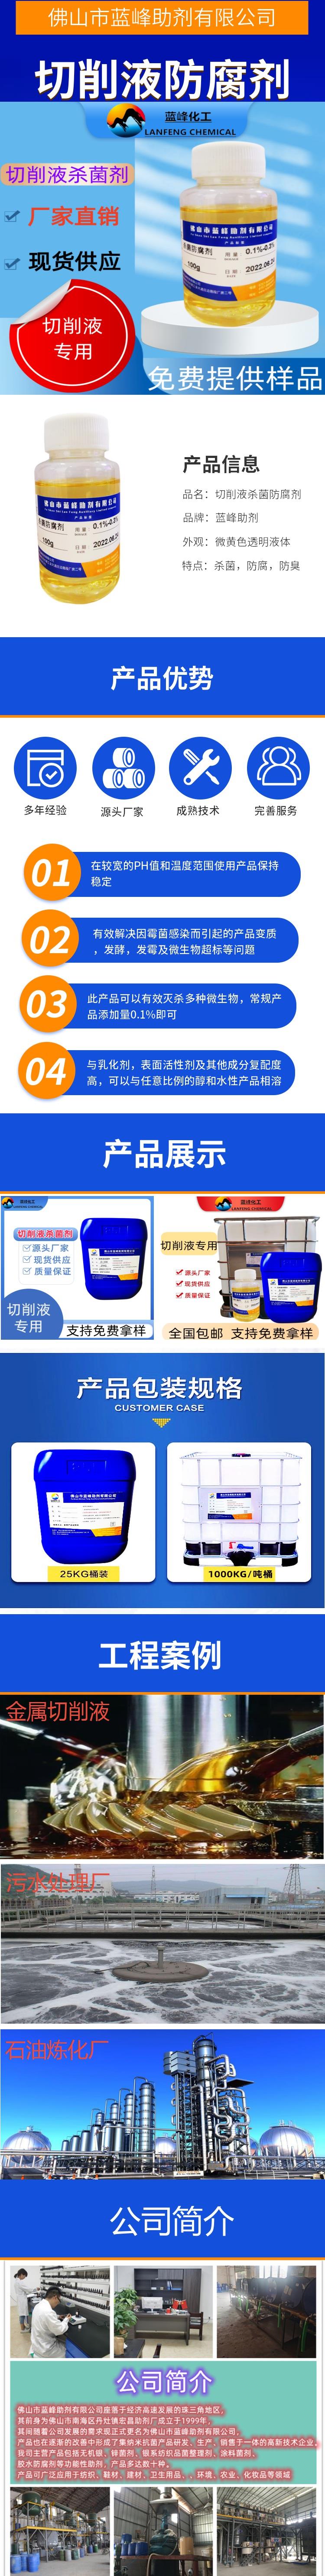 广东佛山JS-3002  切削液防腐剂生产厂家  提供样品免费试样